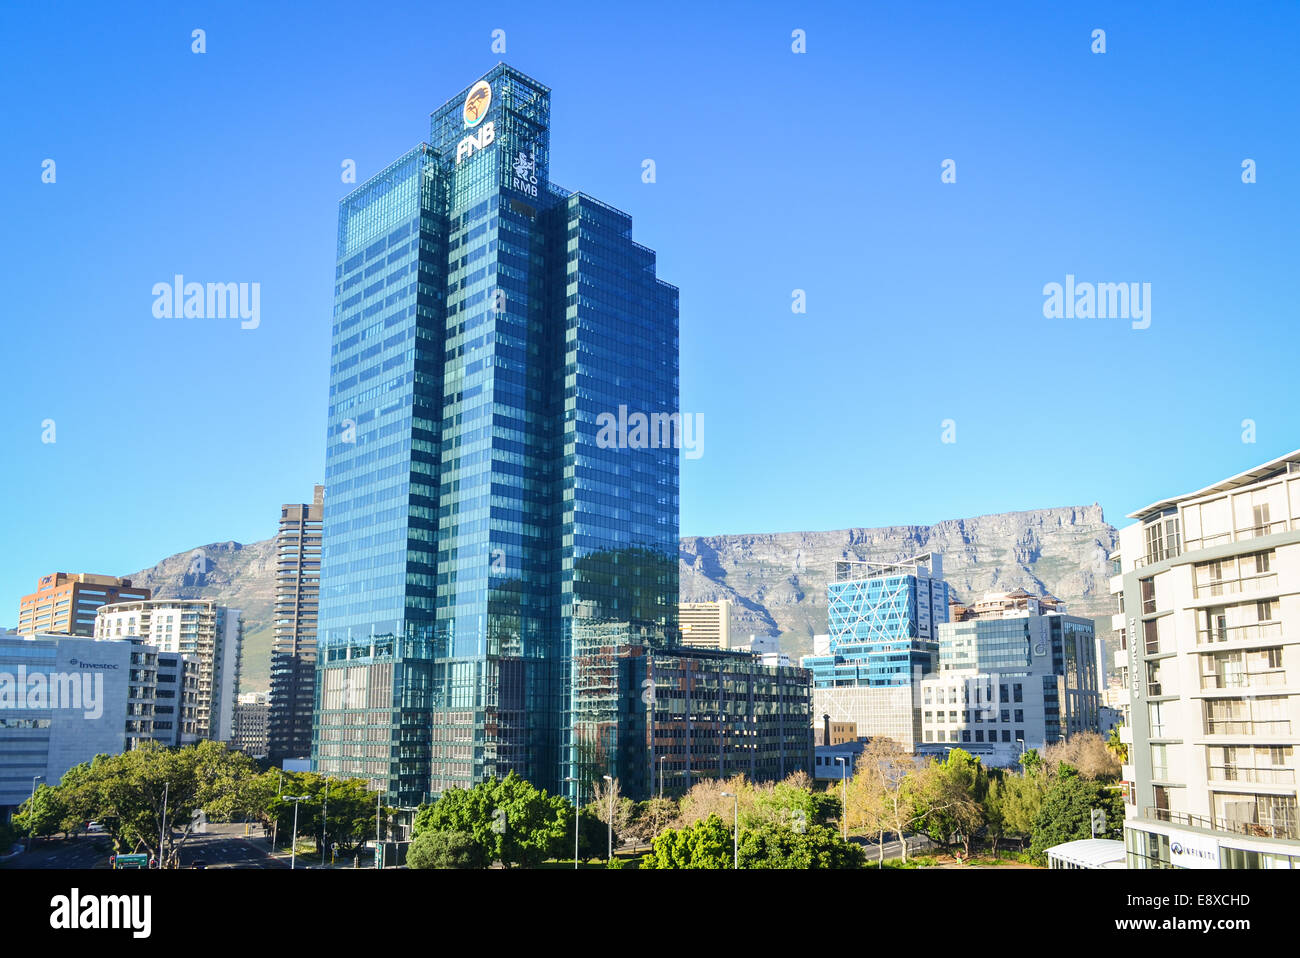 FNB RMB Gebäude in der Stadt Center of Cape Town, Südafrika Stockfoto